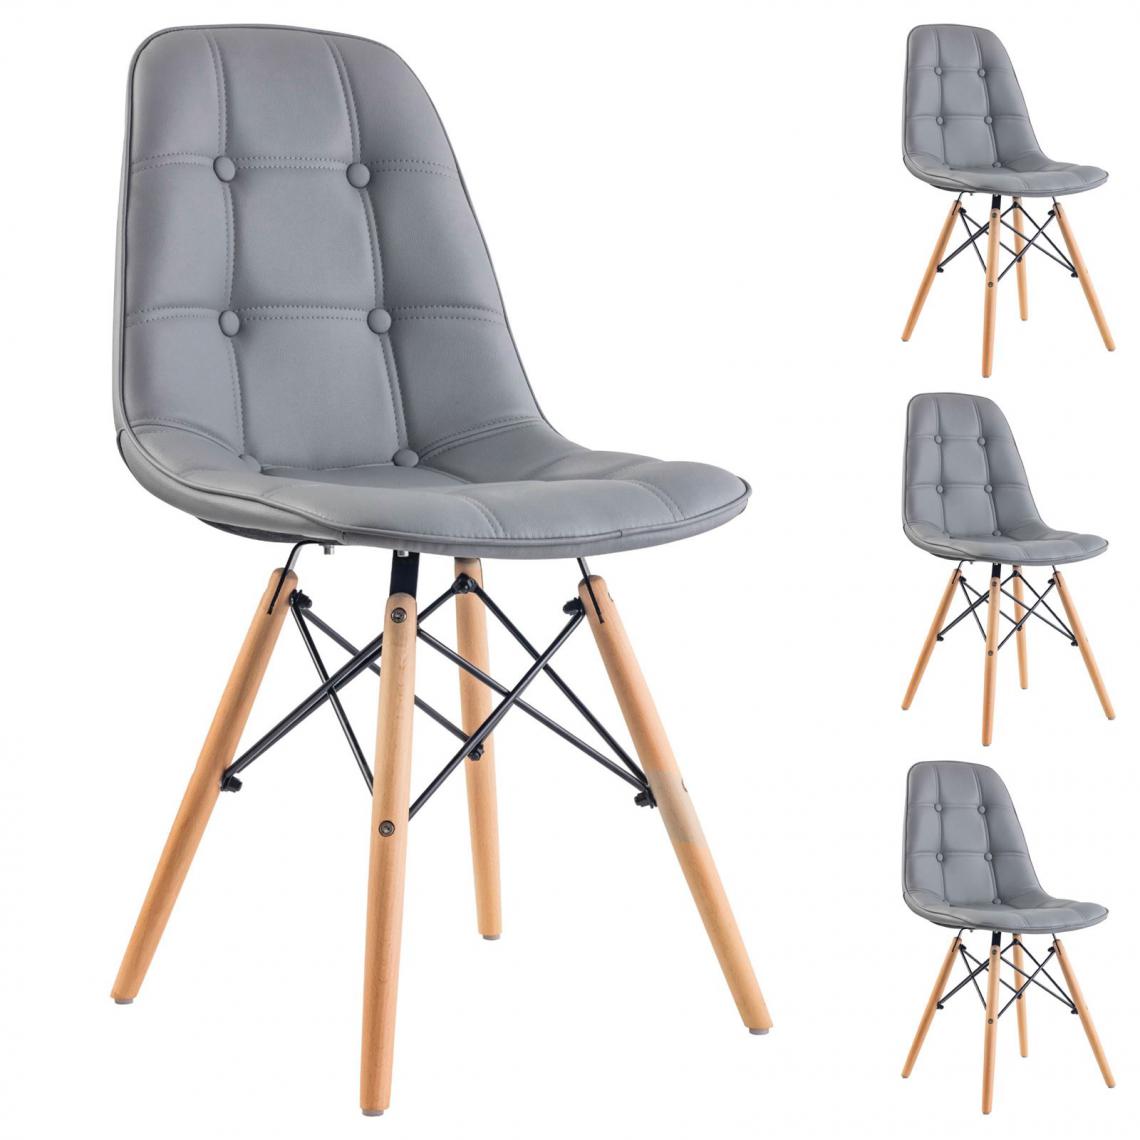 Idimex - Lot de 4 chaises CESAR, en synthétique gris - Chaises